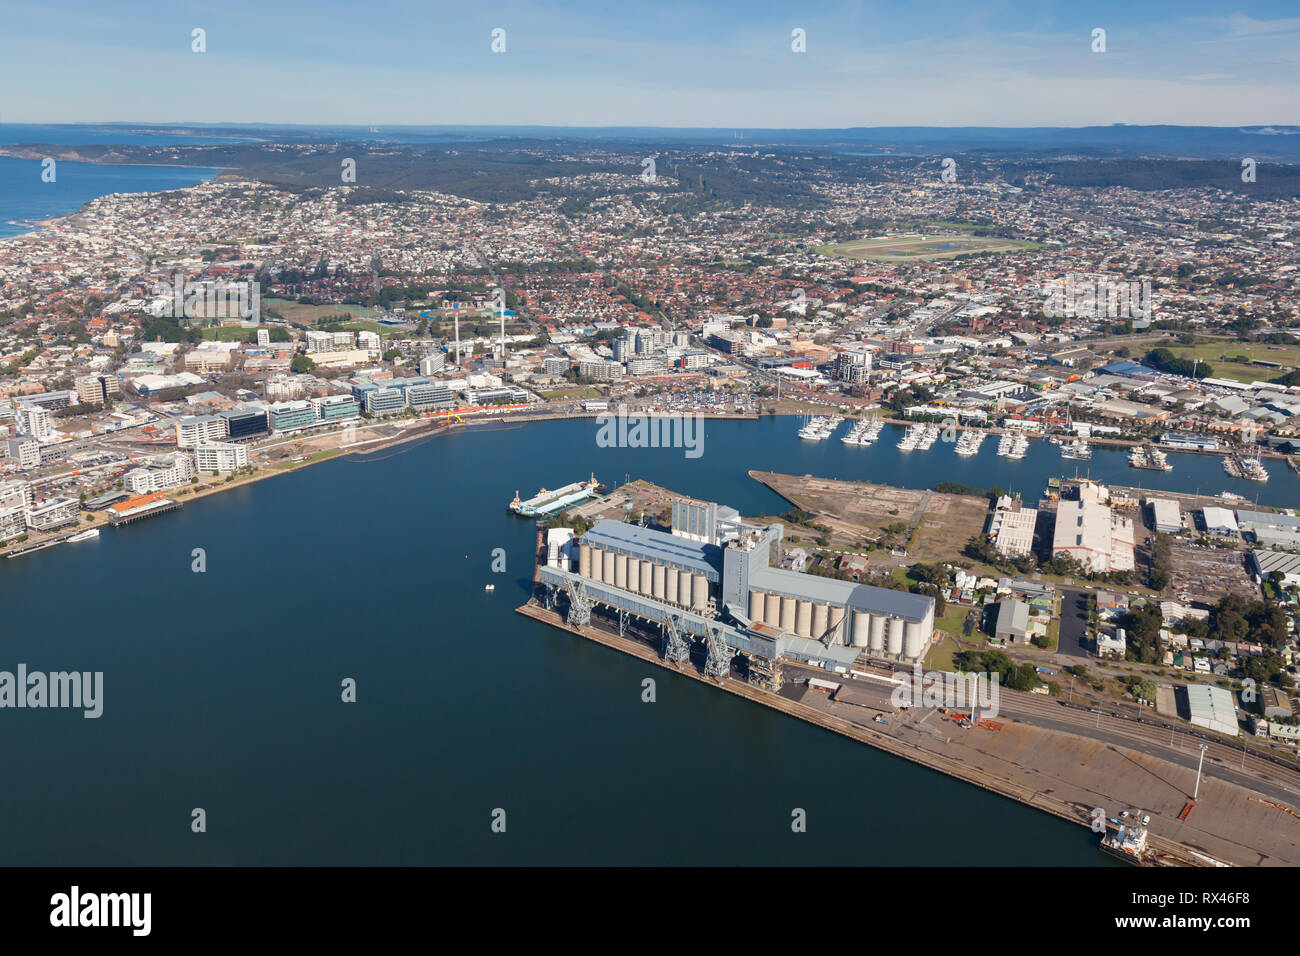 Vue aérienne du port et la ville de Newcastle à la sud à travers le centre-ville de banlieue. Nouveau développement résidentiel et commercial peut être vu le long t Banque D'Images